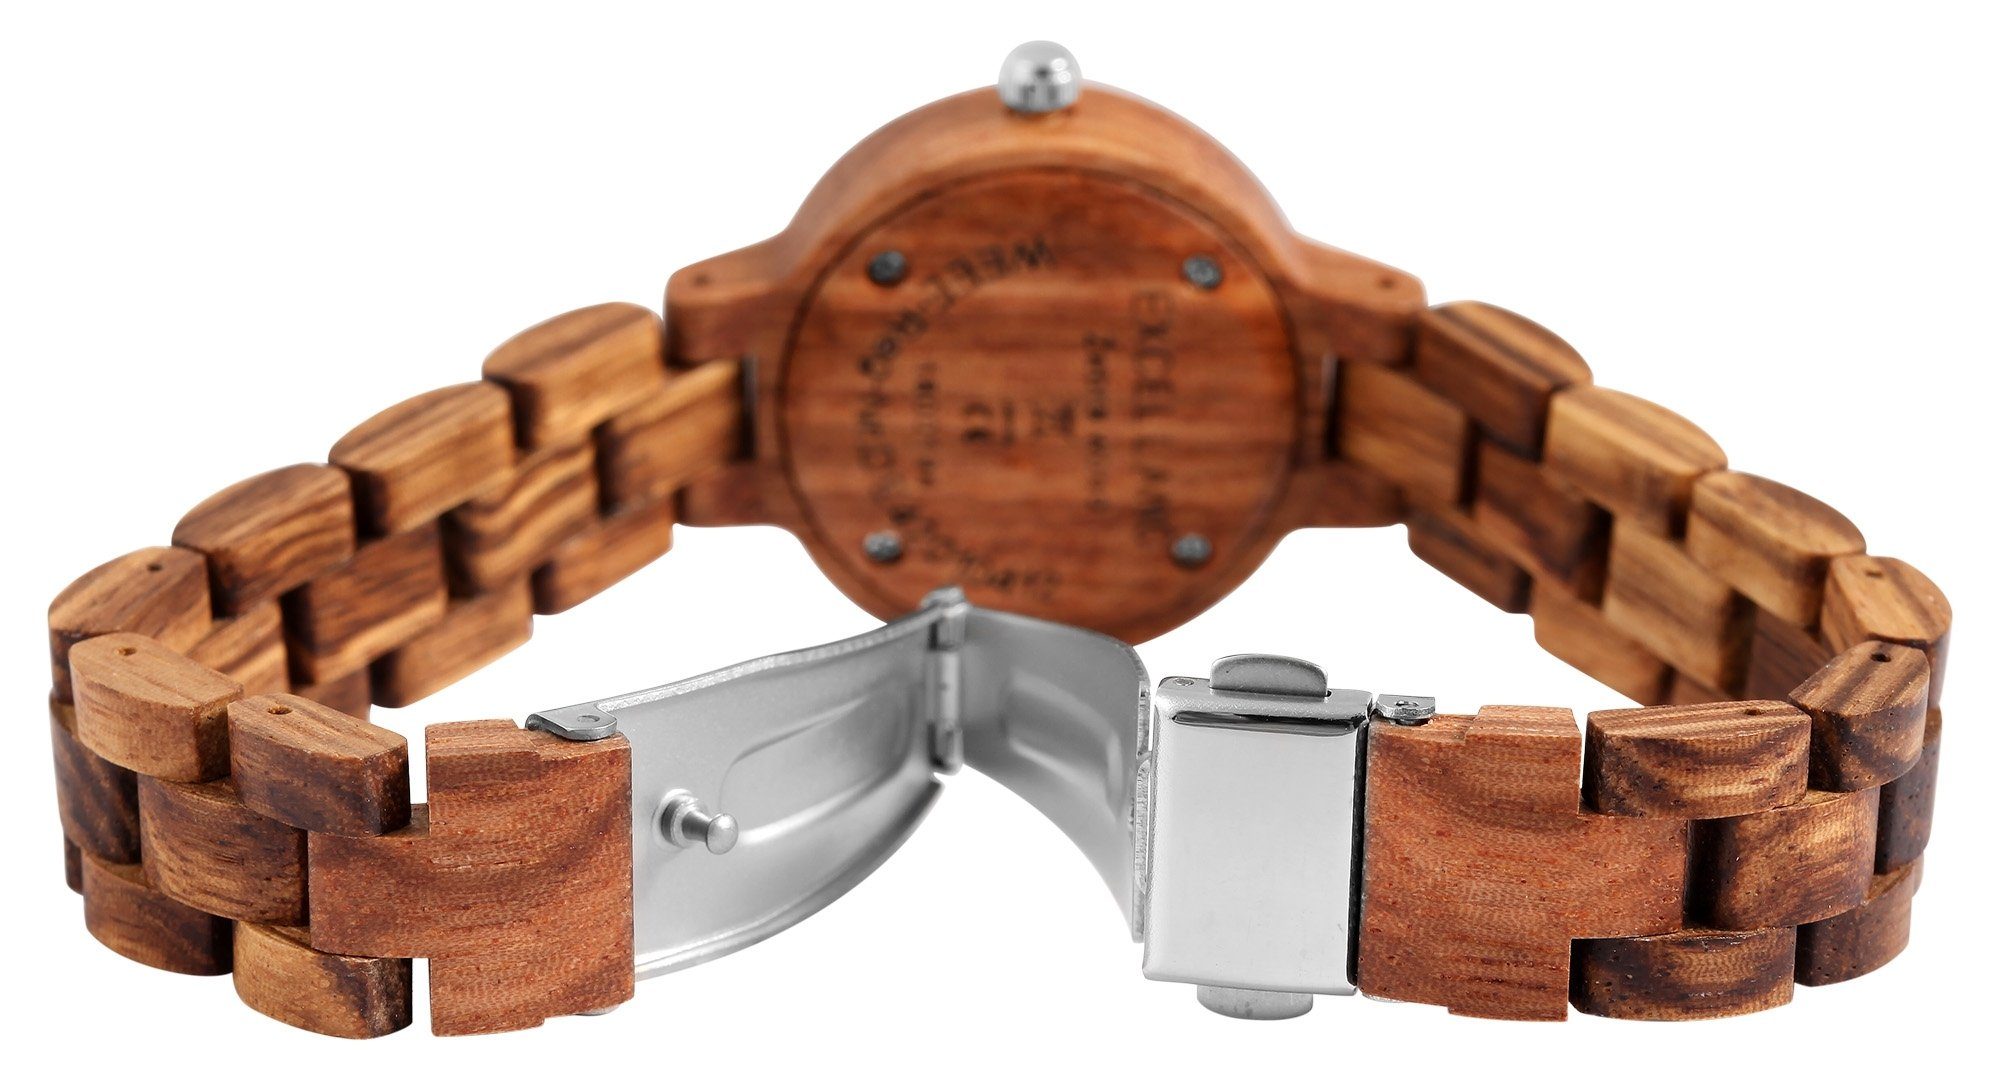 Adelia´s Quarzuhr Armbanduuhr Excellanc Damen Armbanduhr aus Holz /  Holzarmbanduhr, Holzarmbanduhr